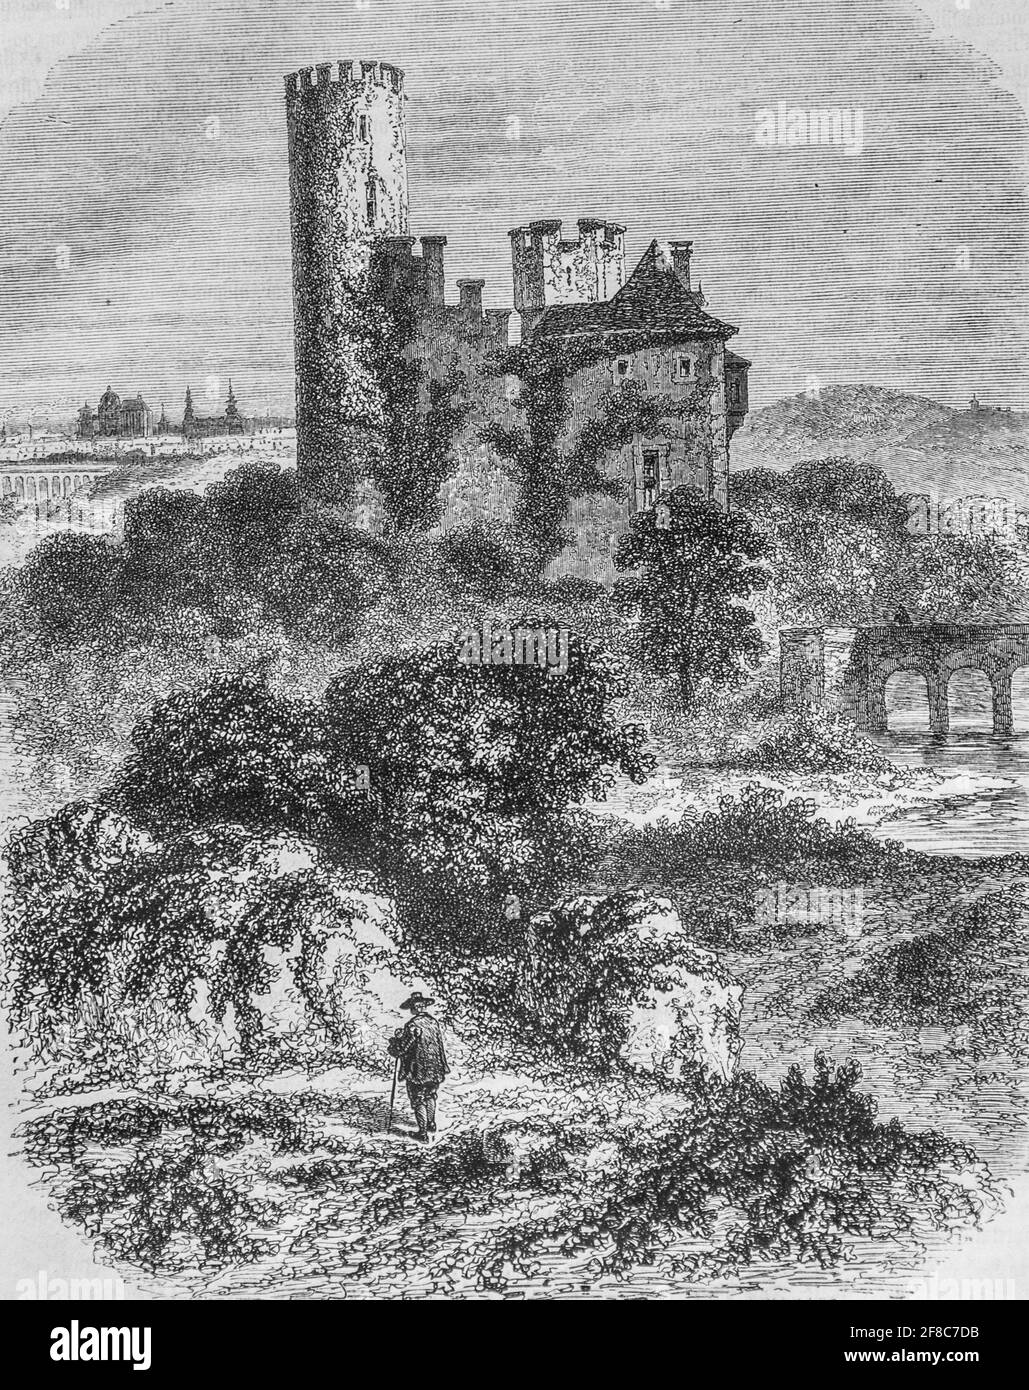 la Tour de la frankenburg pres d'aix la chapelle ,le Magazine pittoresque par m. edouard charton 1870 Stockfoto